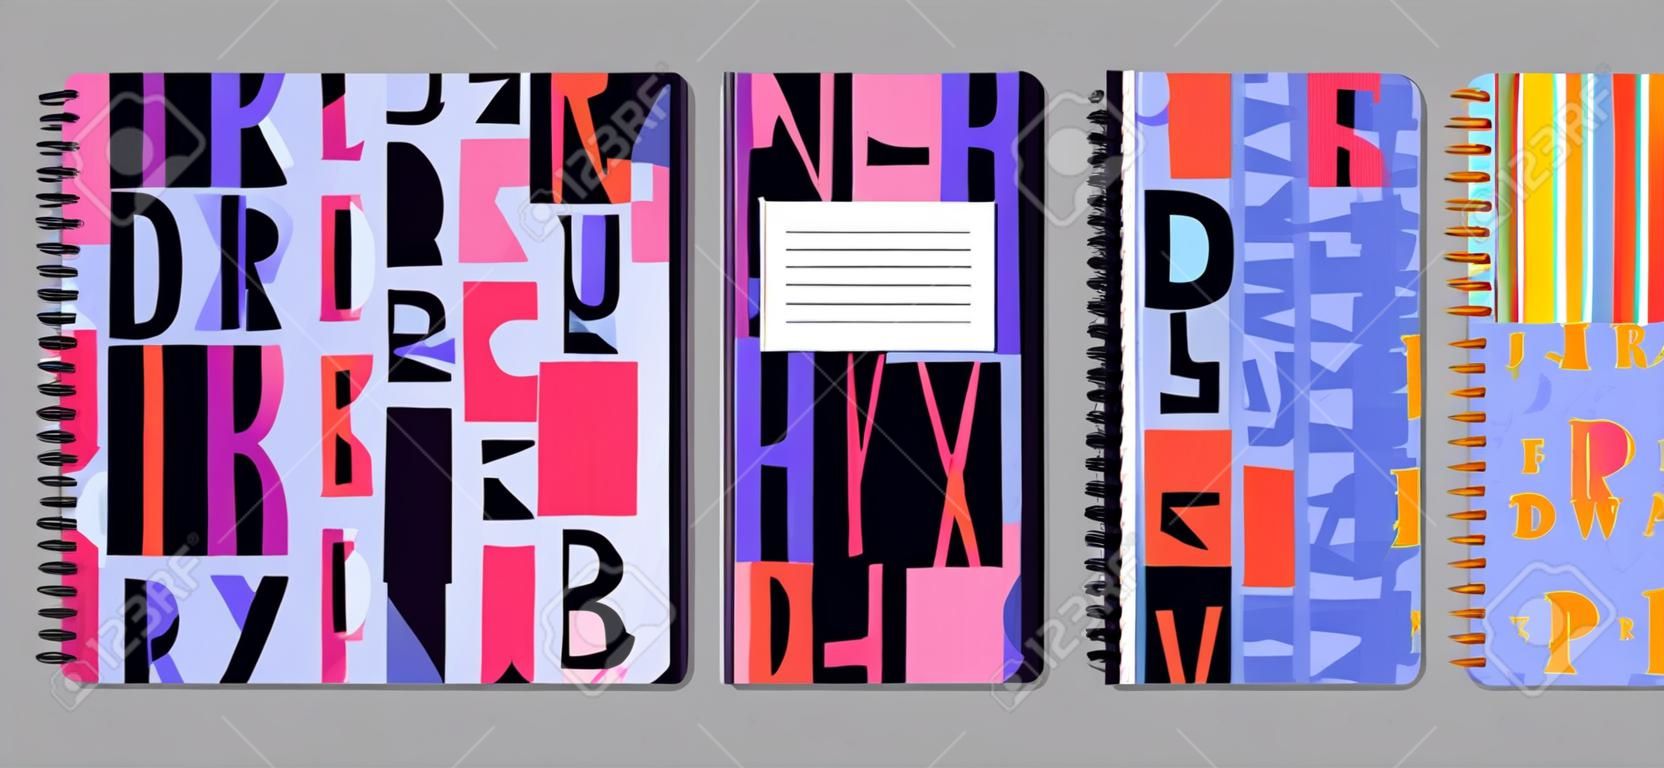 Diseño de portada de cuaderno y diario para imprimir con patrón sin costuras incluido. Para folletos y cuadernos escolares. Vector stock vector ilustración.